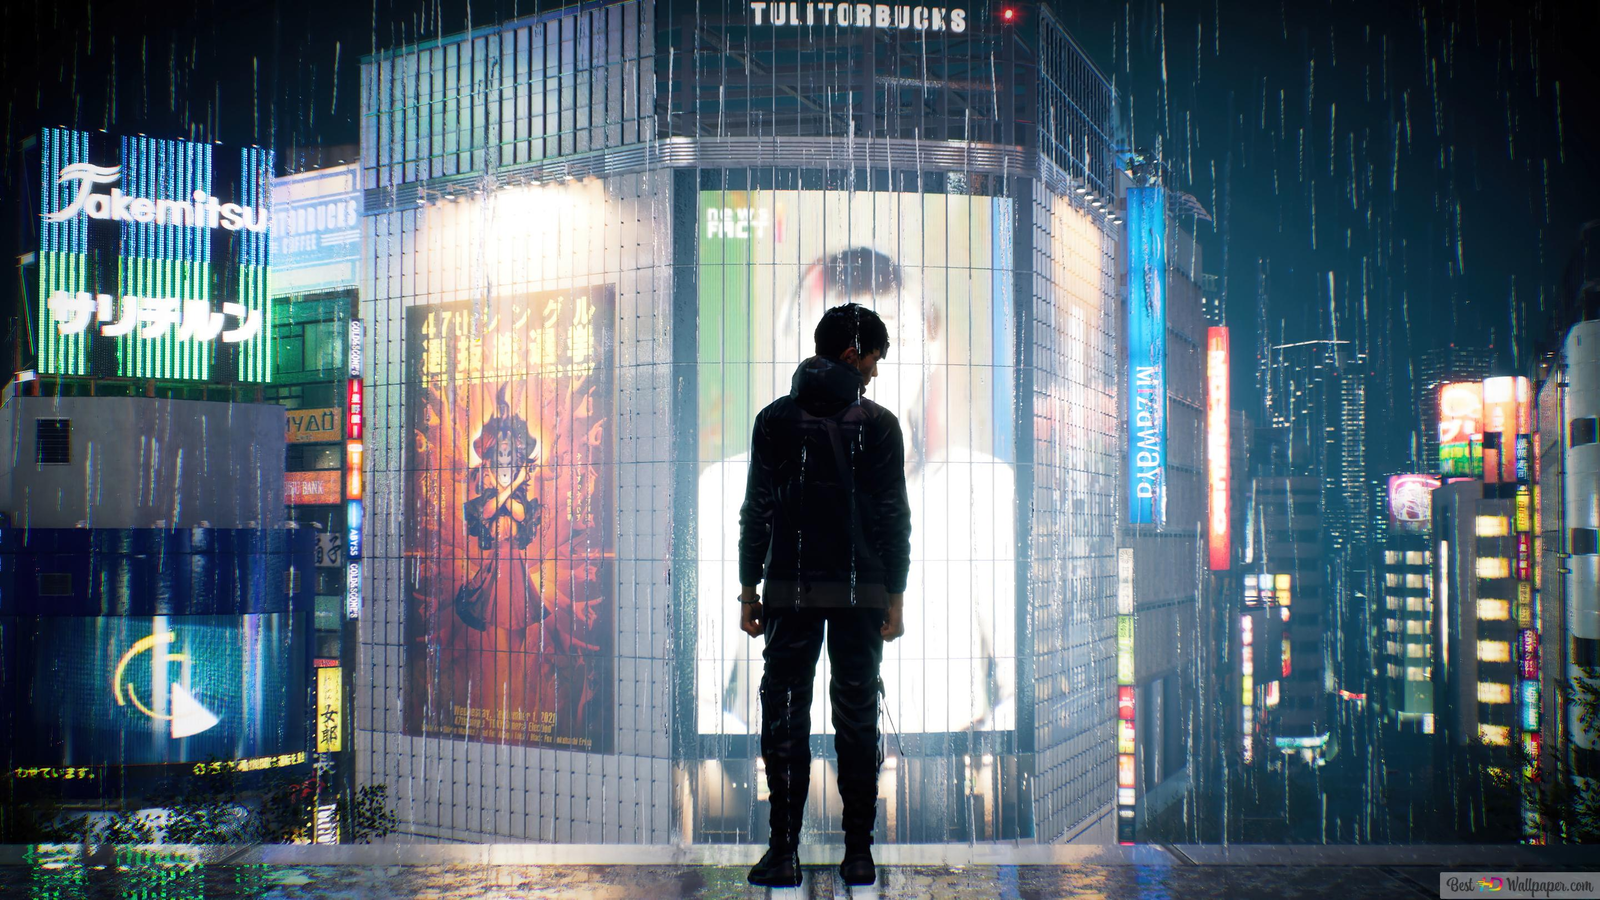 Ghostwire: Tokyo regista 6 milhões de jogadores